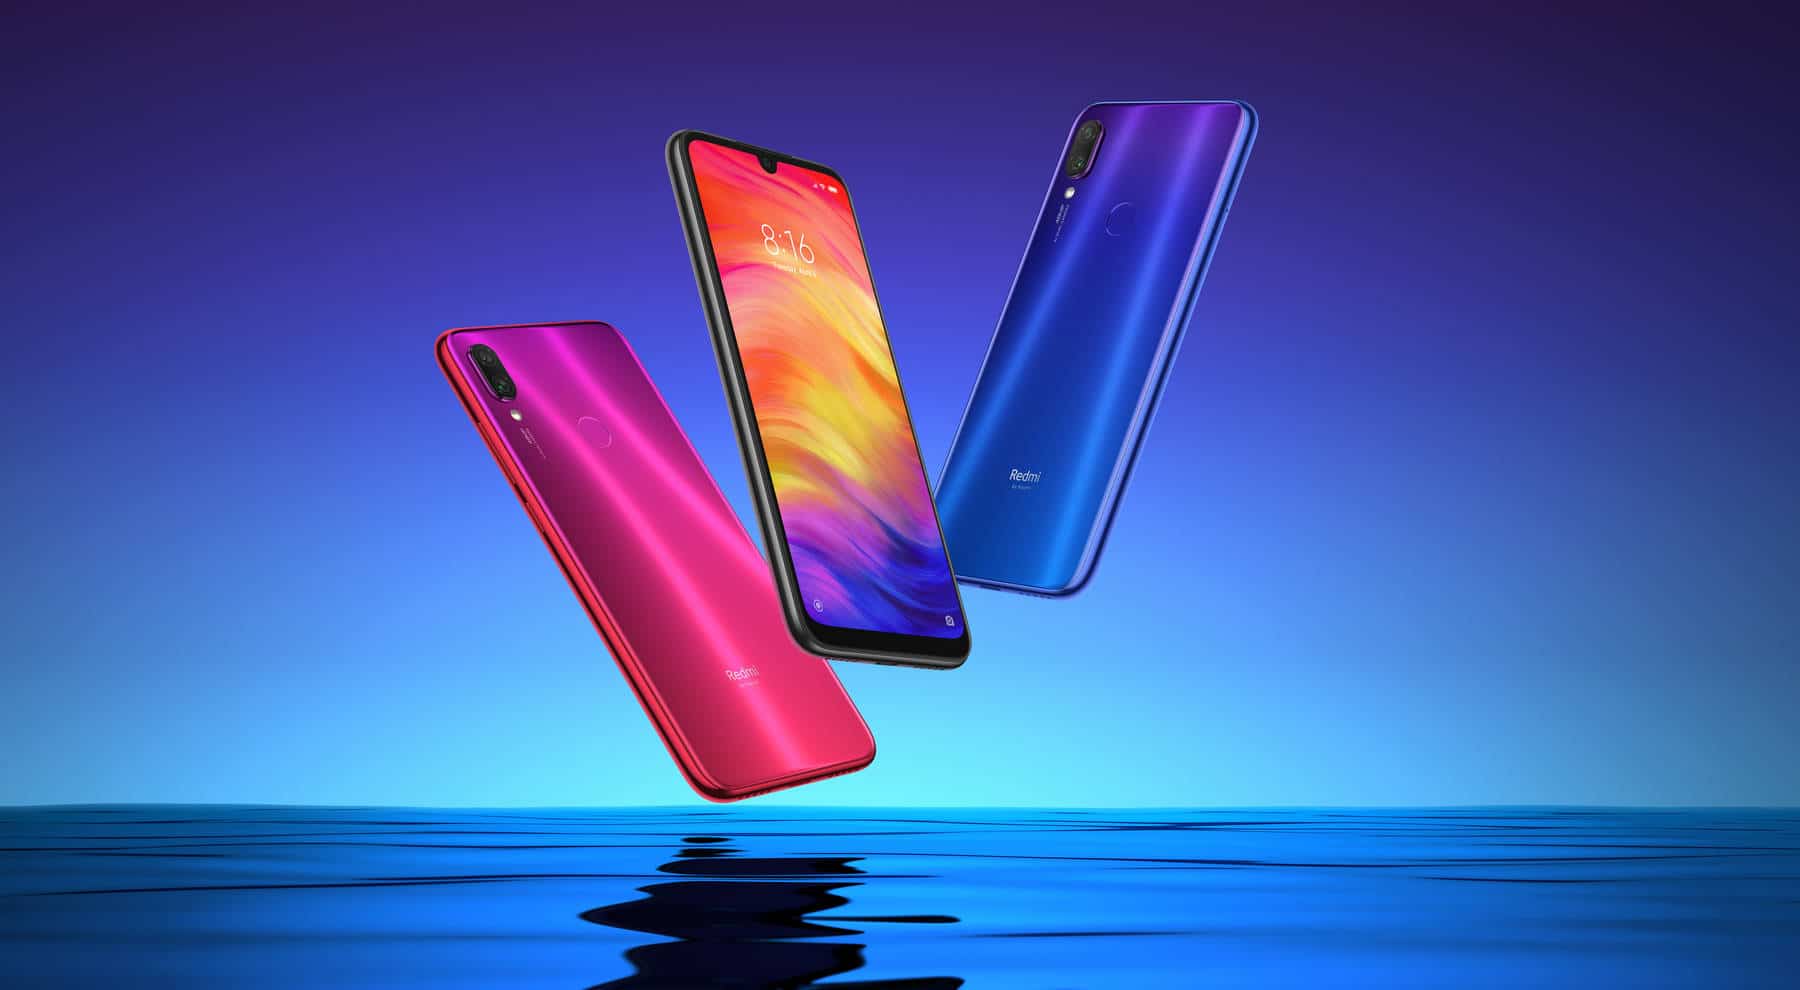 Canalys เผย Redmi Note 8 Series ติดอันดับสมาร์ทโฟนที่ขายดีที่สุดในโลกในไตรมาส 4 ปี 2019 1